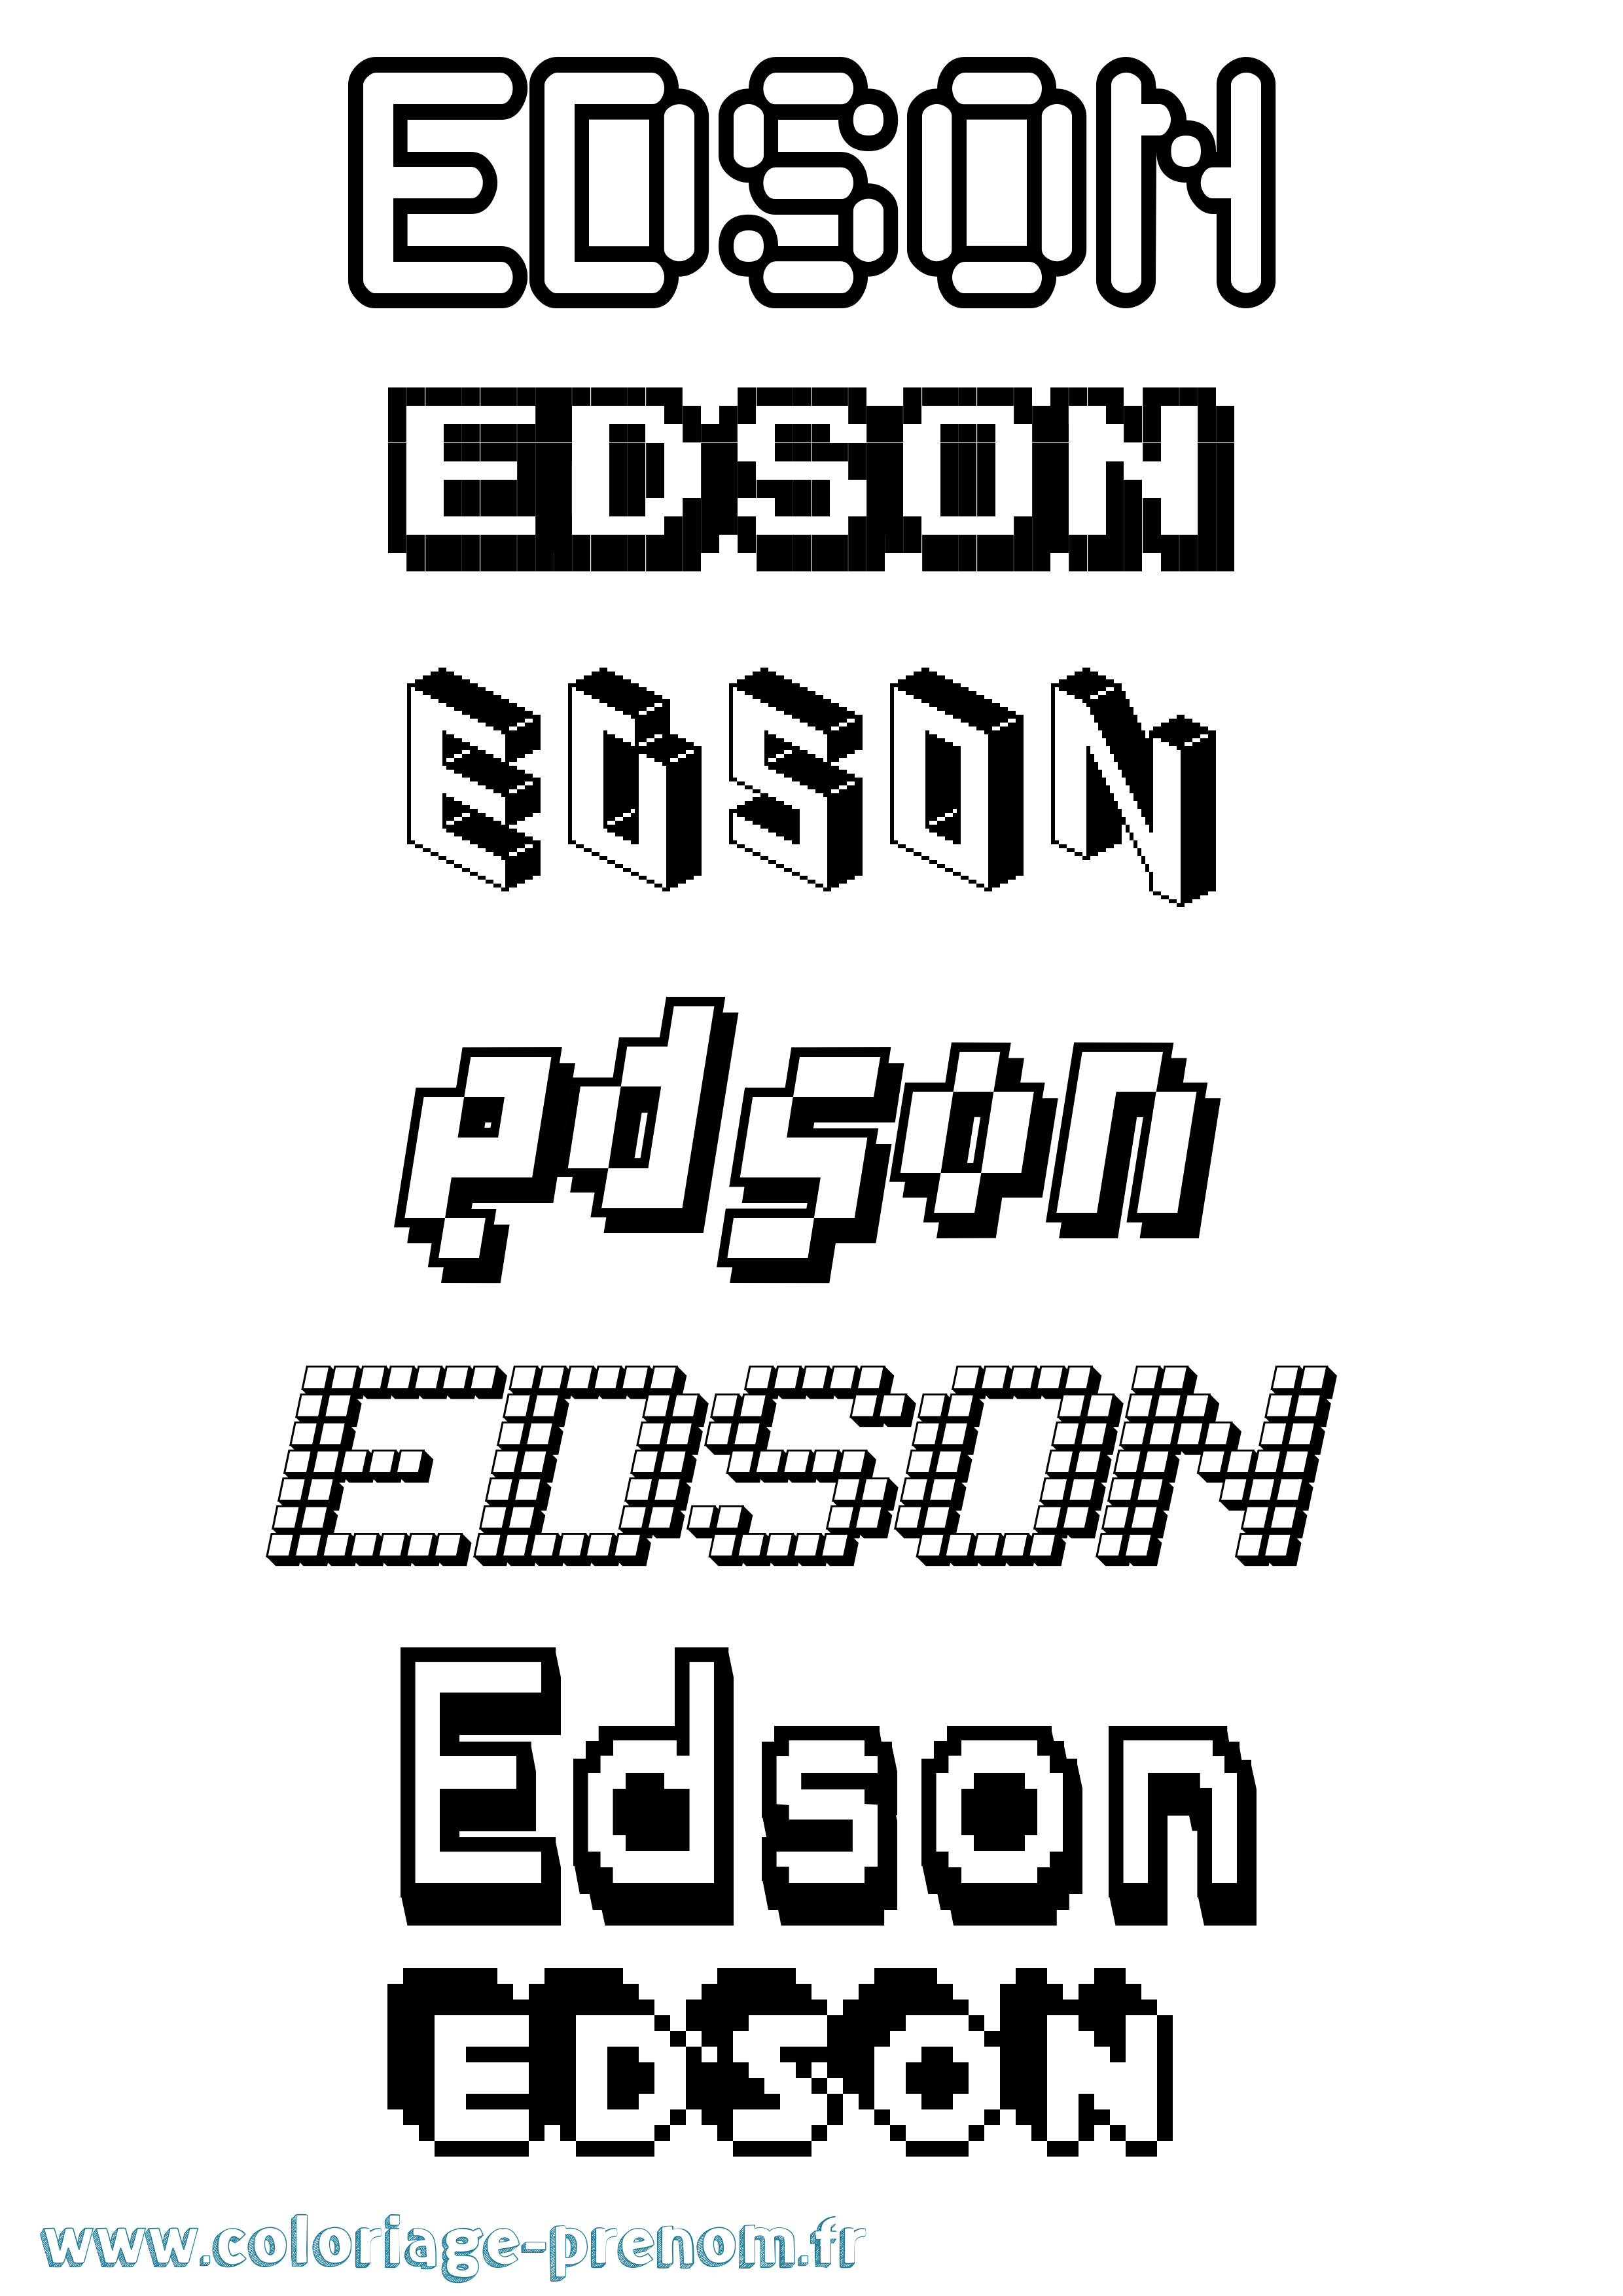 Coloriage prénom Edson Pixel